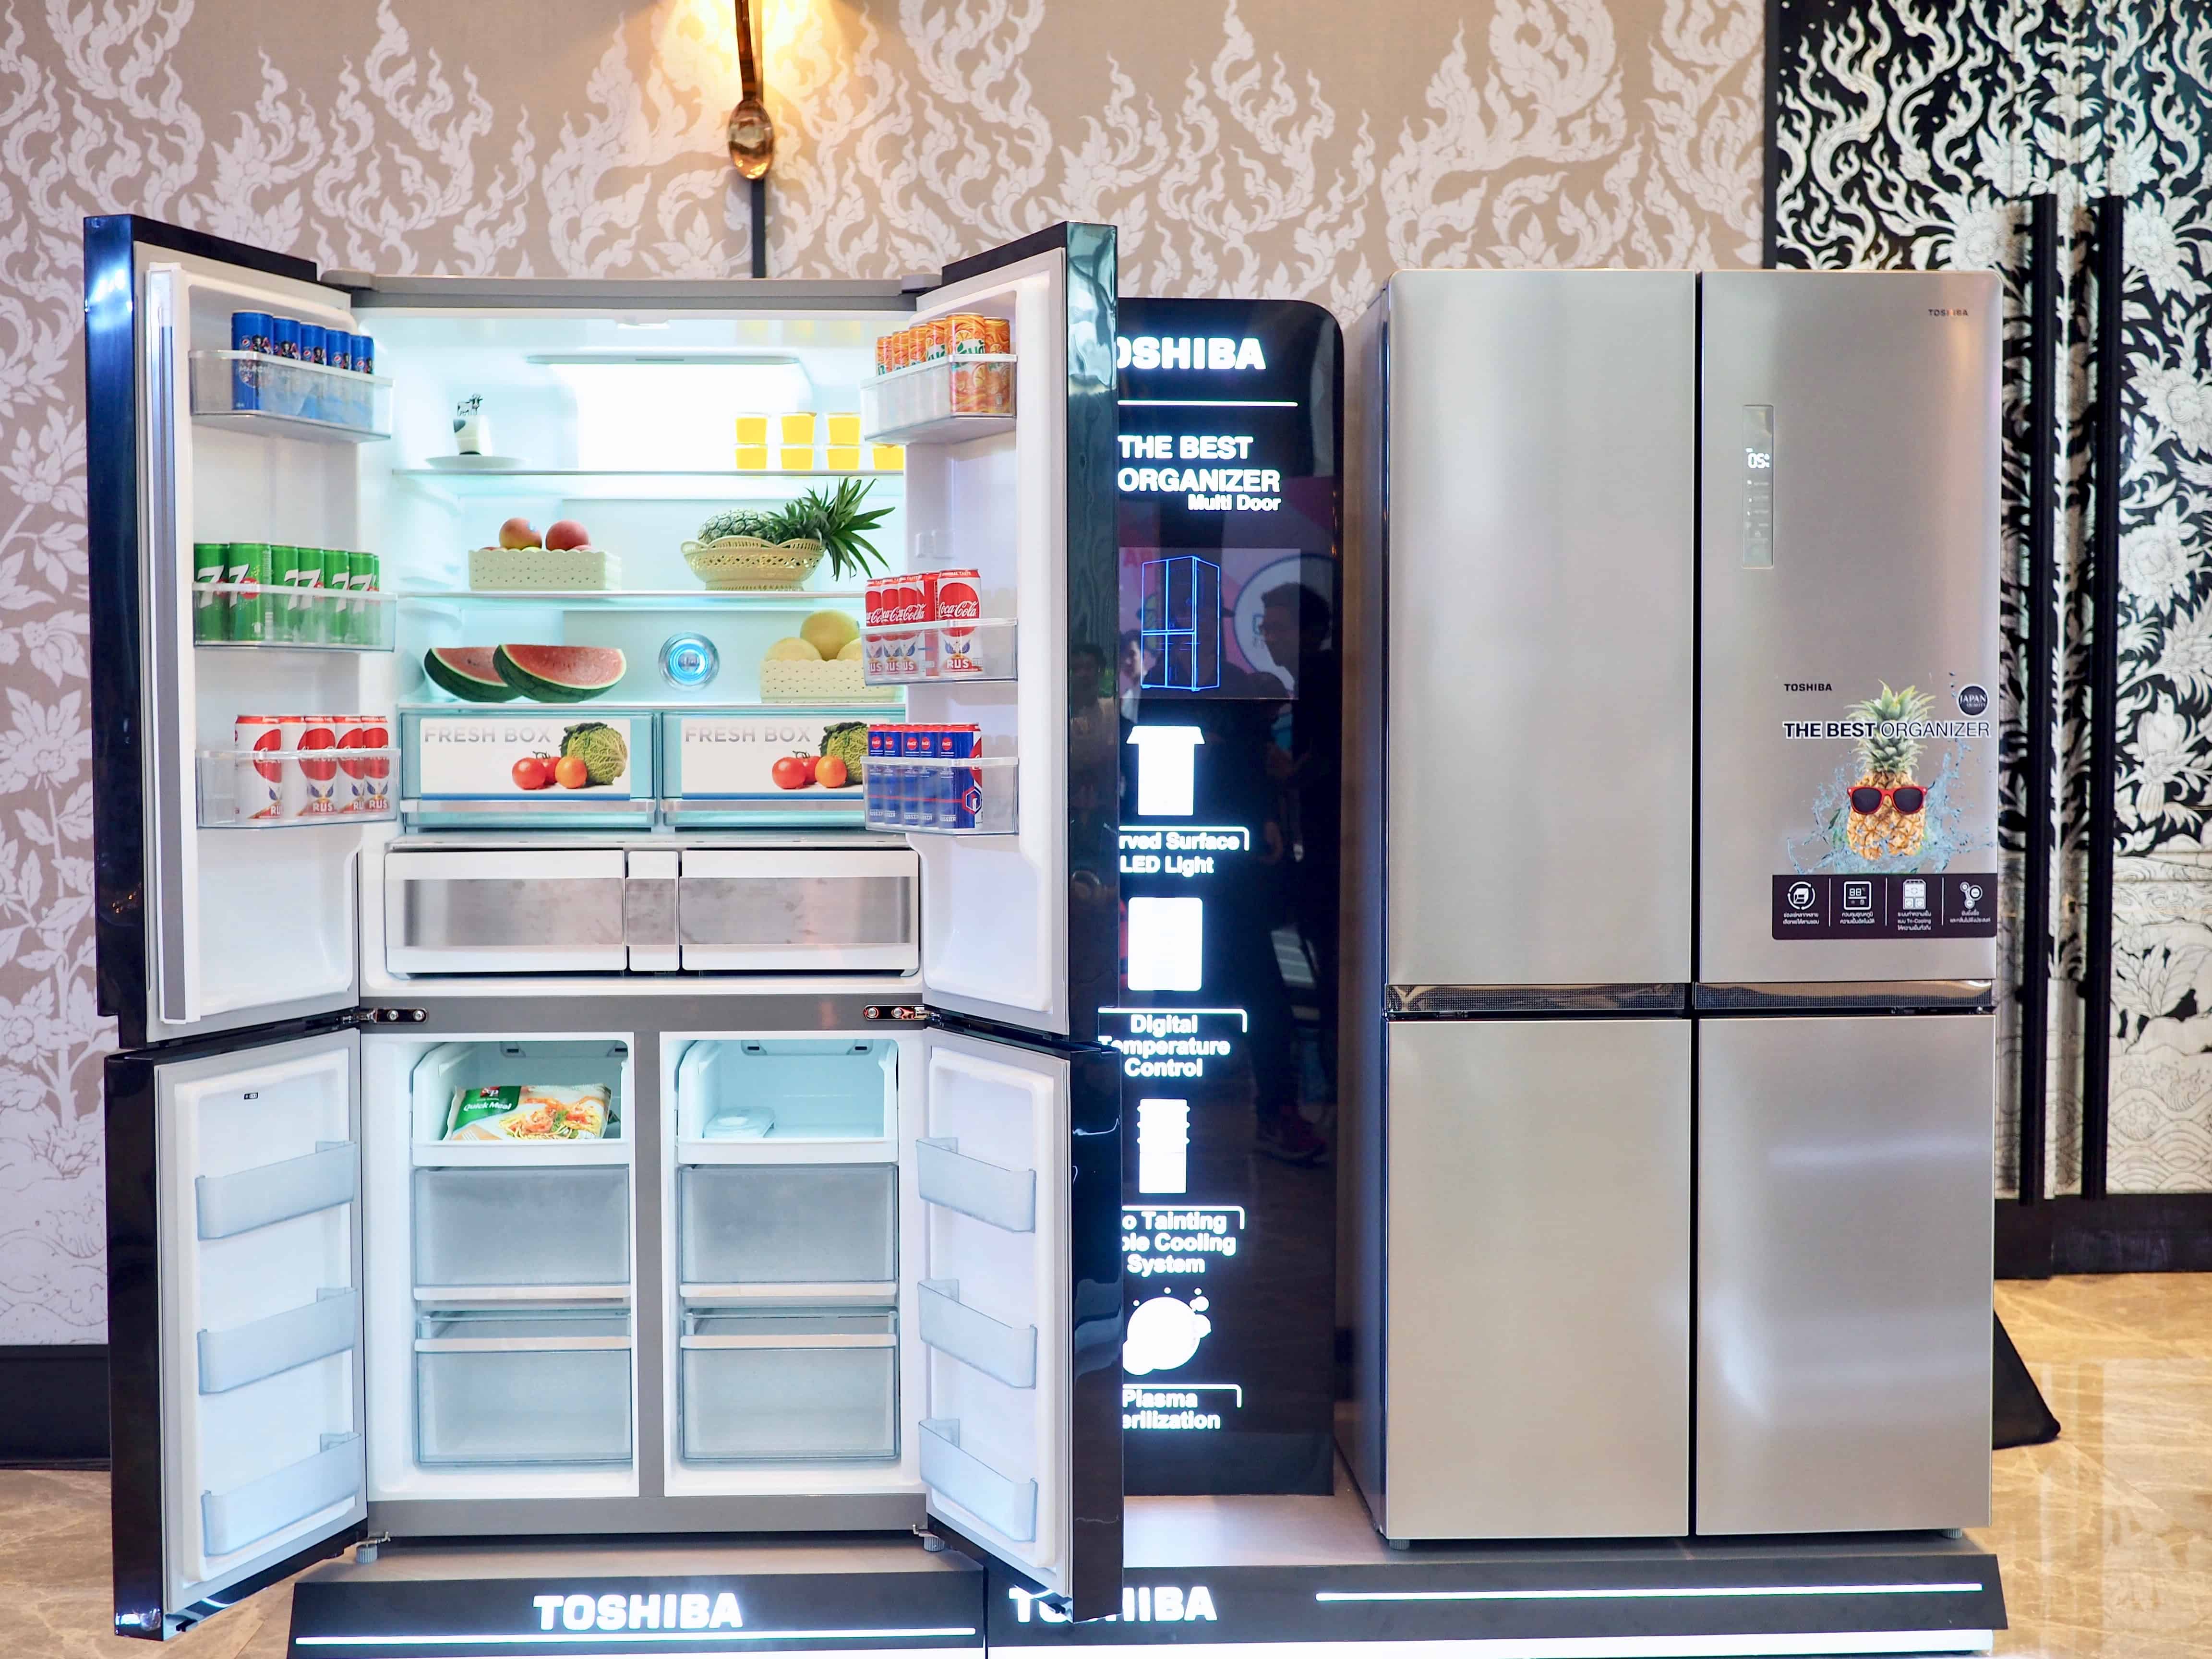 Toshiba เปิดตัวสินค้าใหม่ ตู้เย็น และ เครื่องซักผ้าฝาหน้า นำเข้าจากญี่ปุ่น